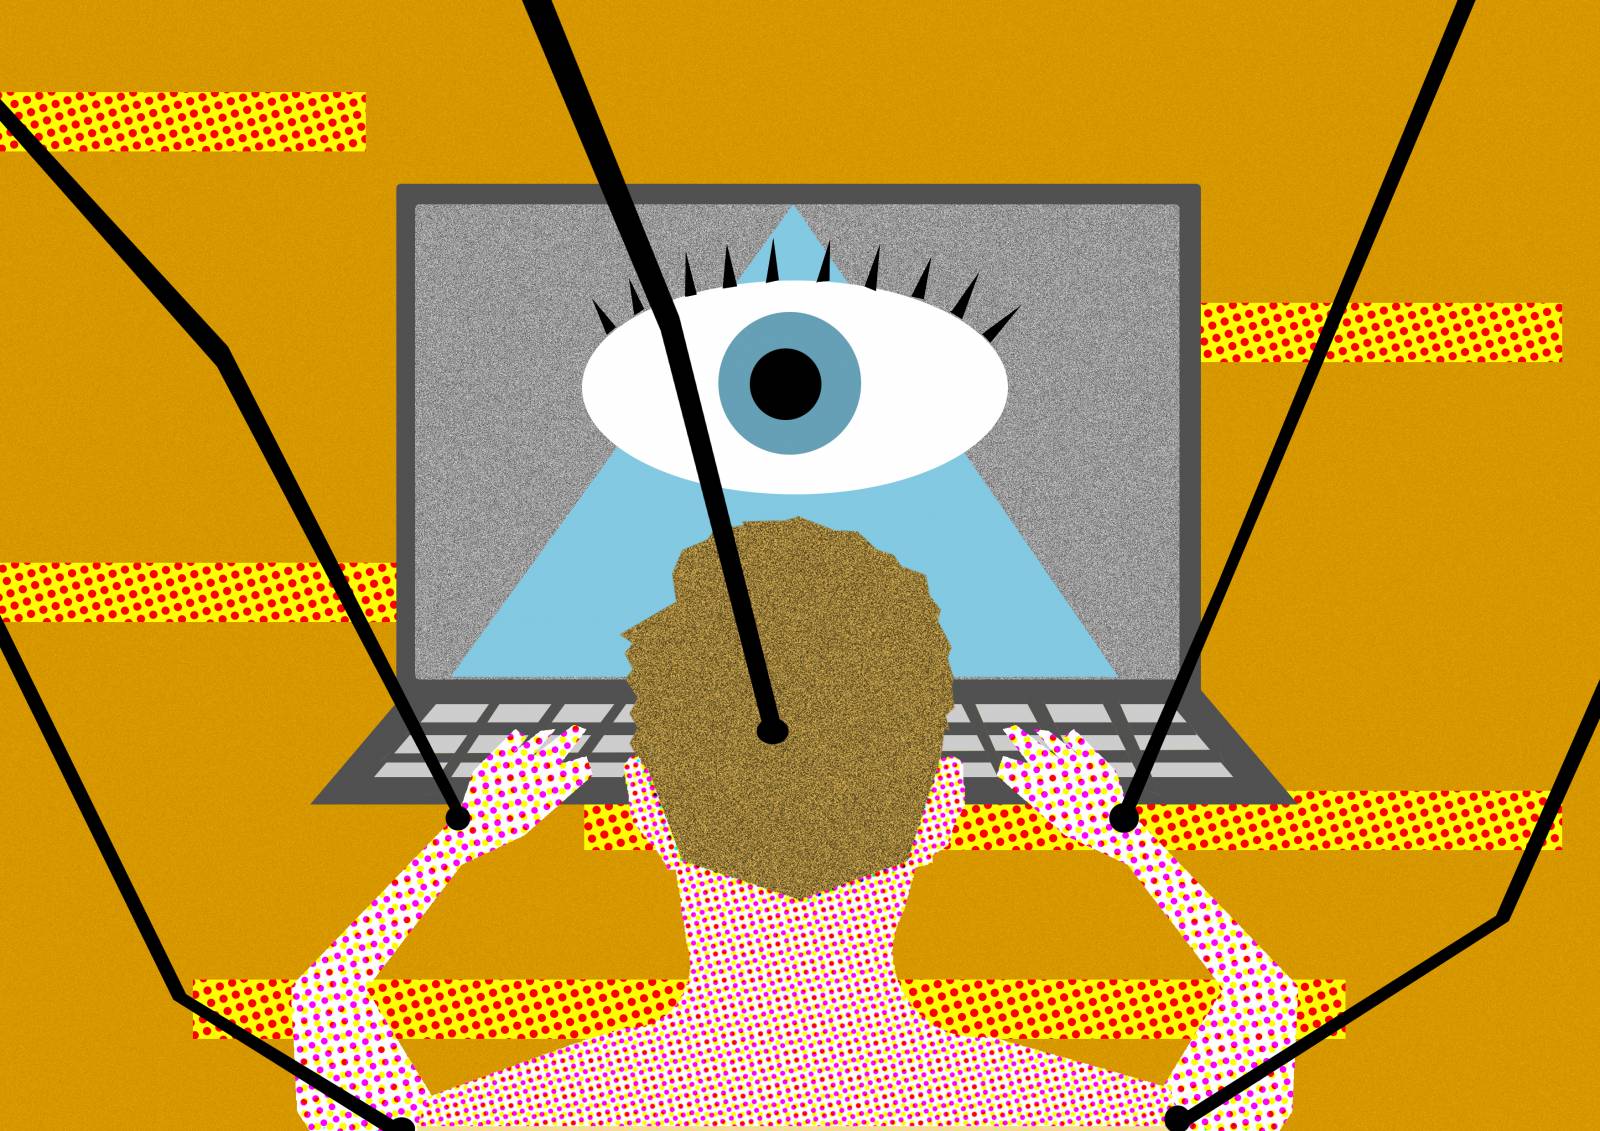 Piirroskuva, jossa henkilö on tietokoneen ruudun äärellä. Ruudulla näkyy yksi iso silmä.